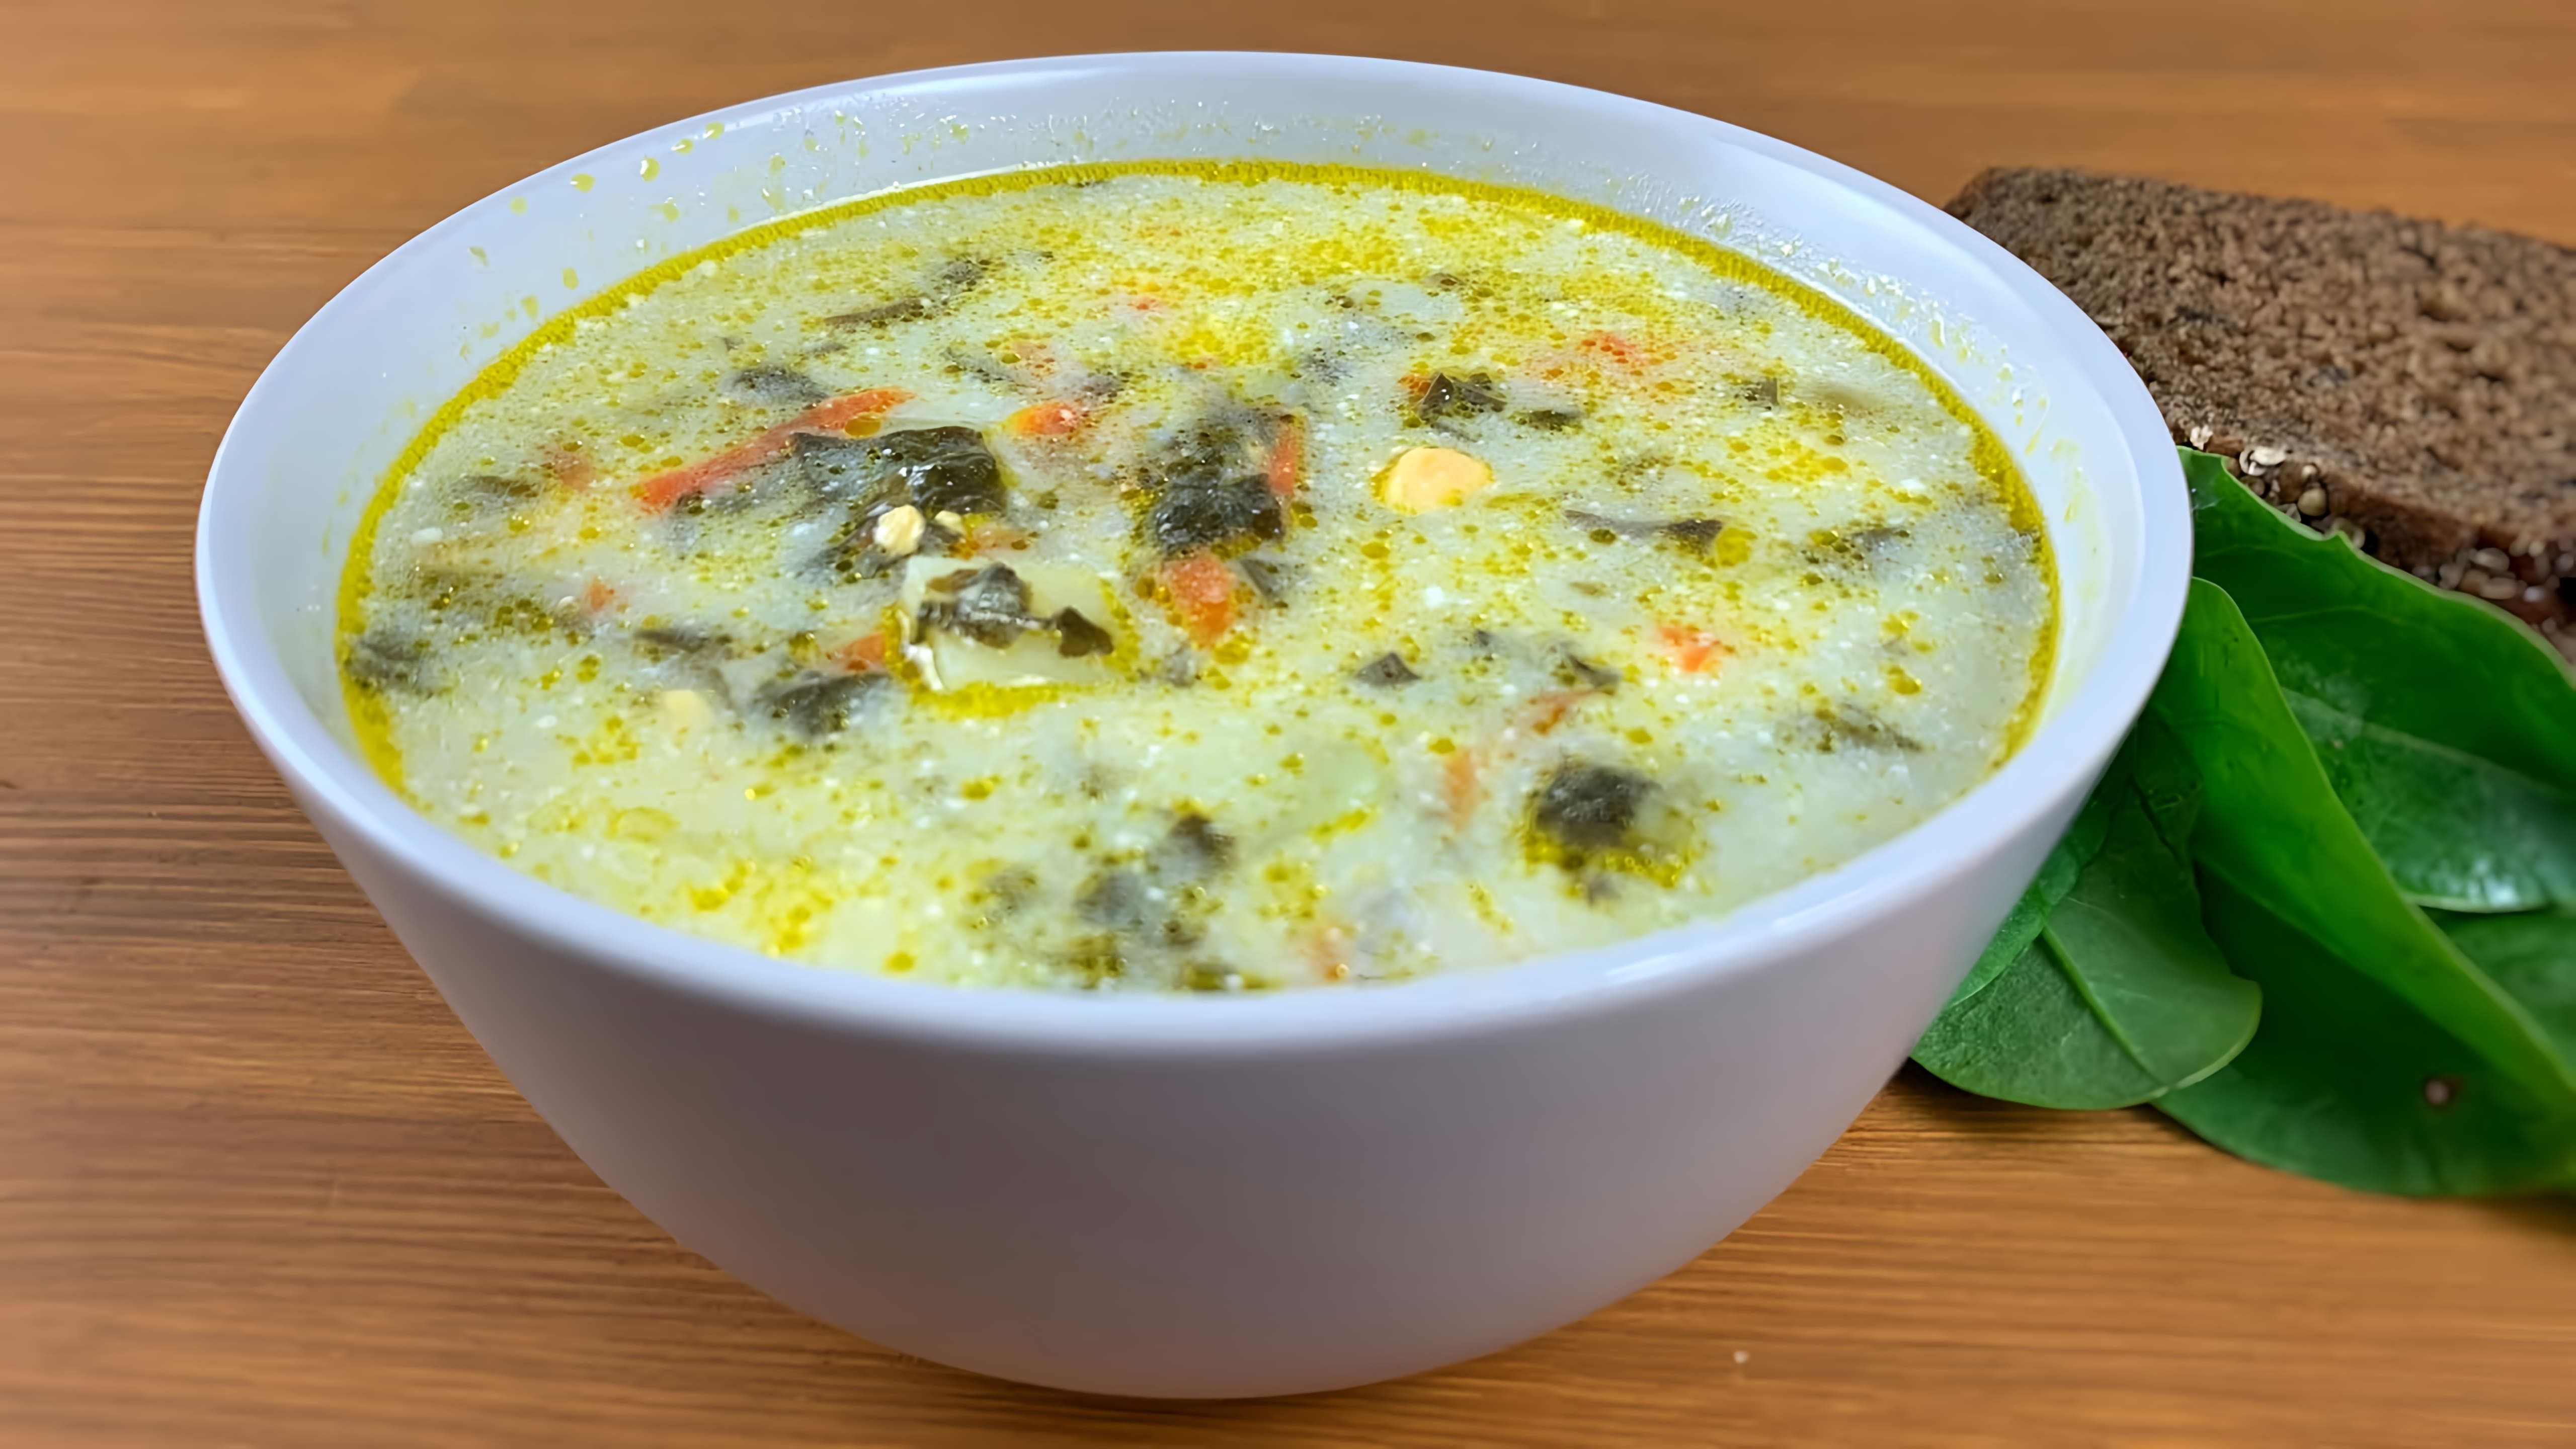 В этом видео демонстрируется процесс приготовления щавелевого супа